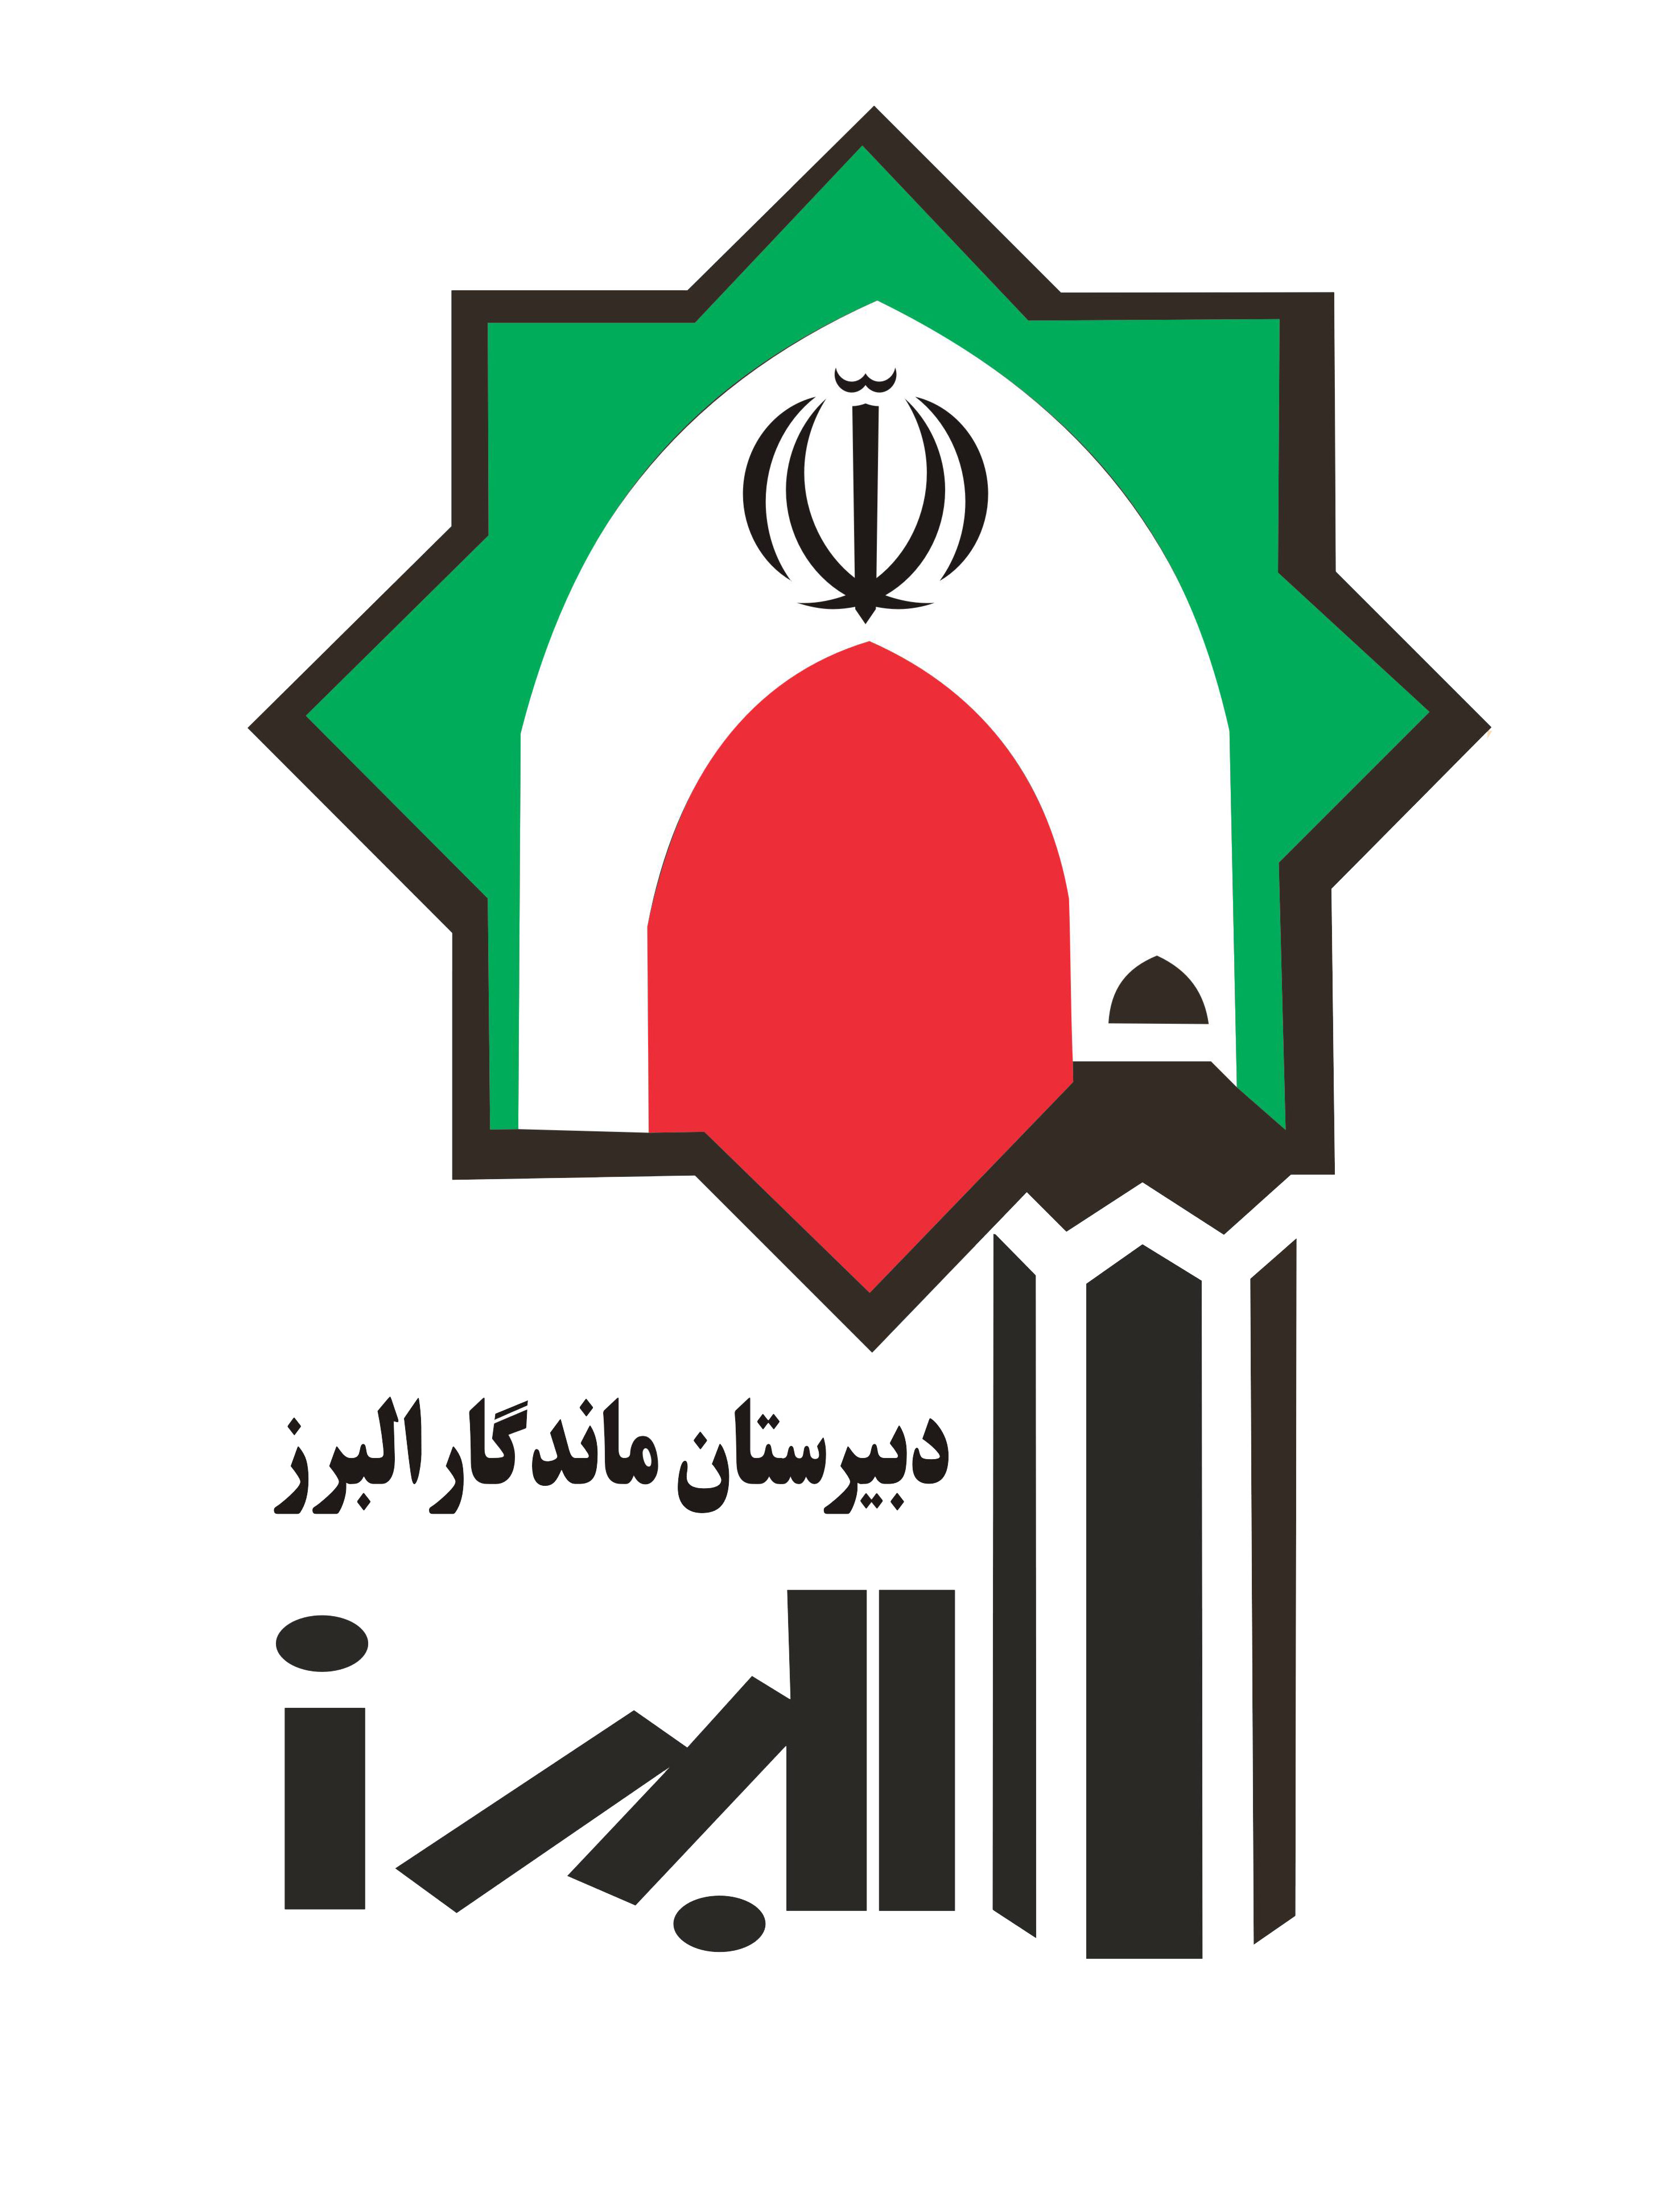 دبیرستان ماندگار البرز قهرمان مسابقات ورزشی منطقه 6 تهران 